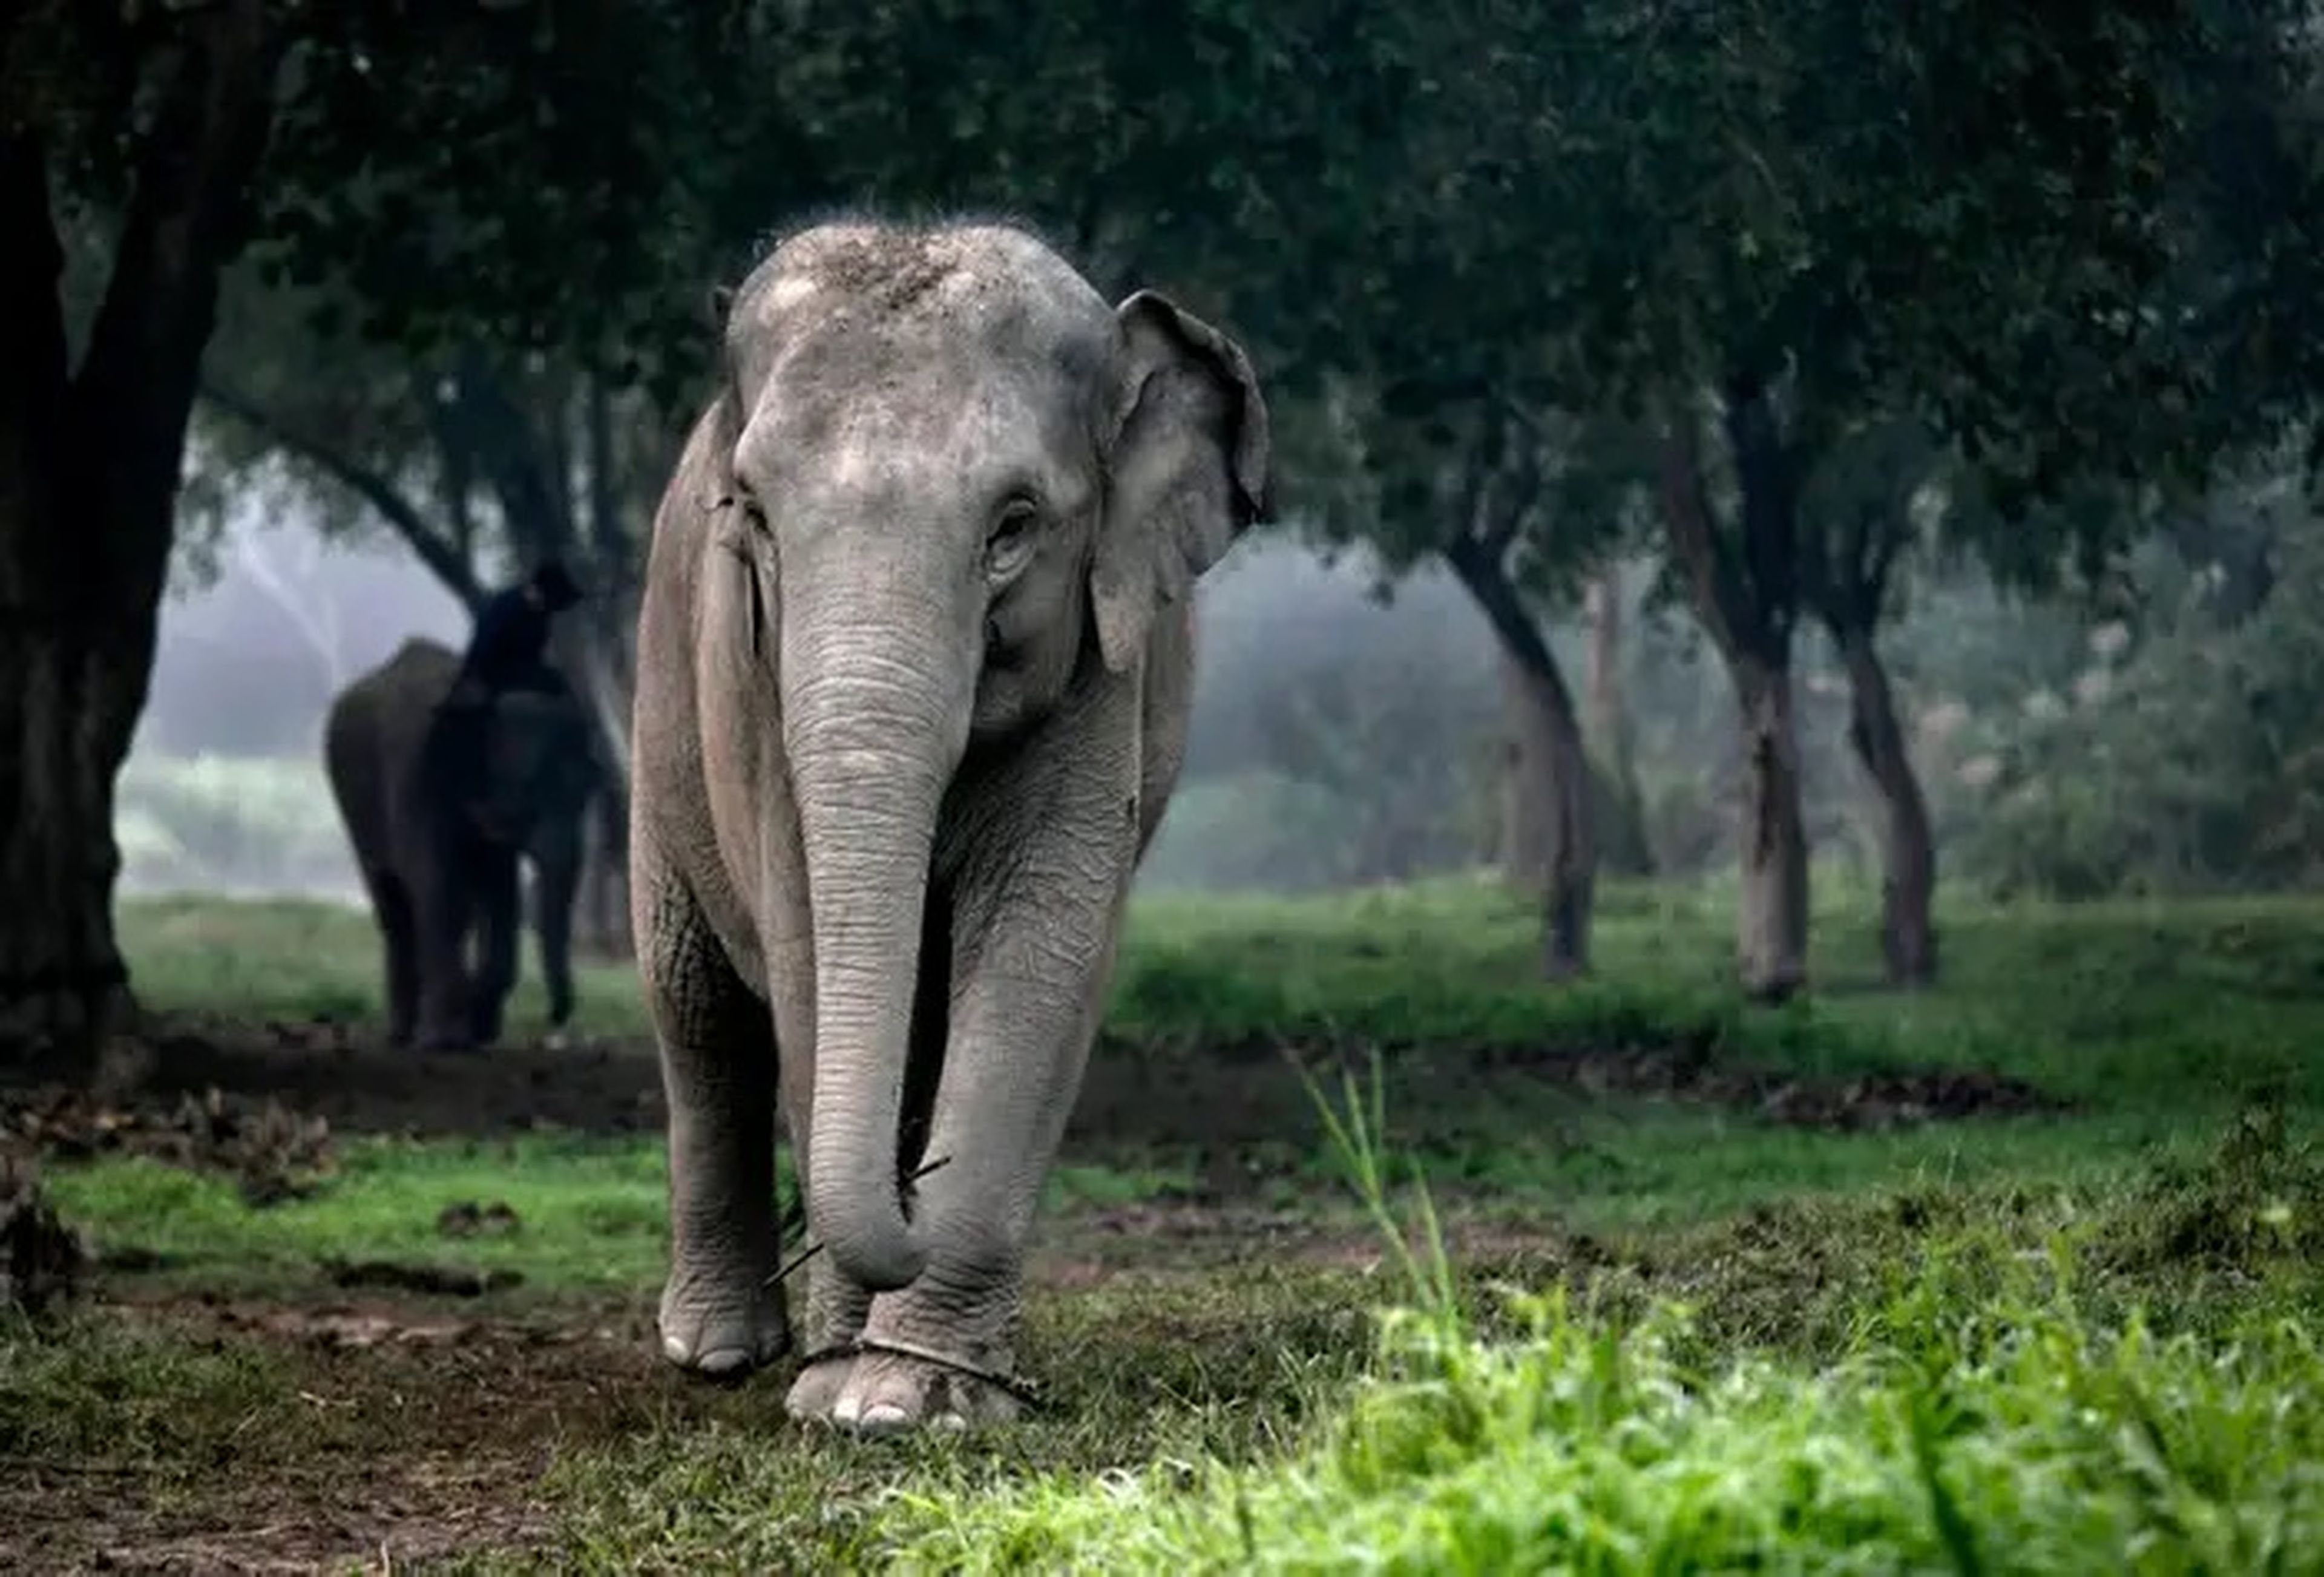 Los grandes mamíferos como los elefantes corren el riesgo de extinguirse a medida que sus recursos naturales sigan disminuyendo debido al cambio climático y otras interferencias humanas.